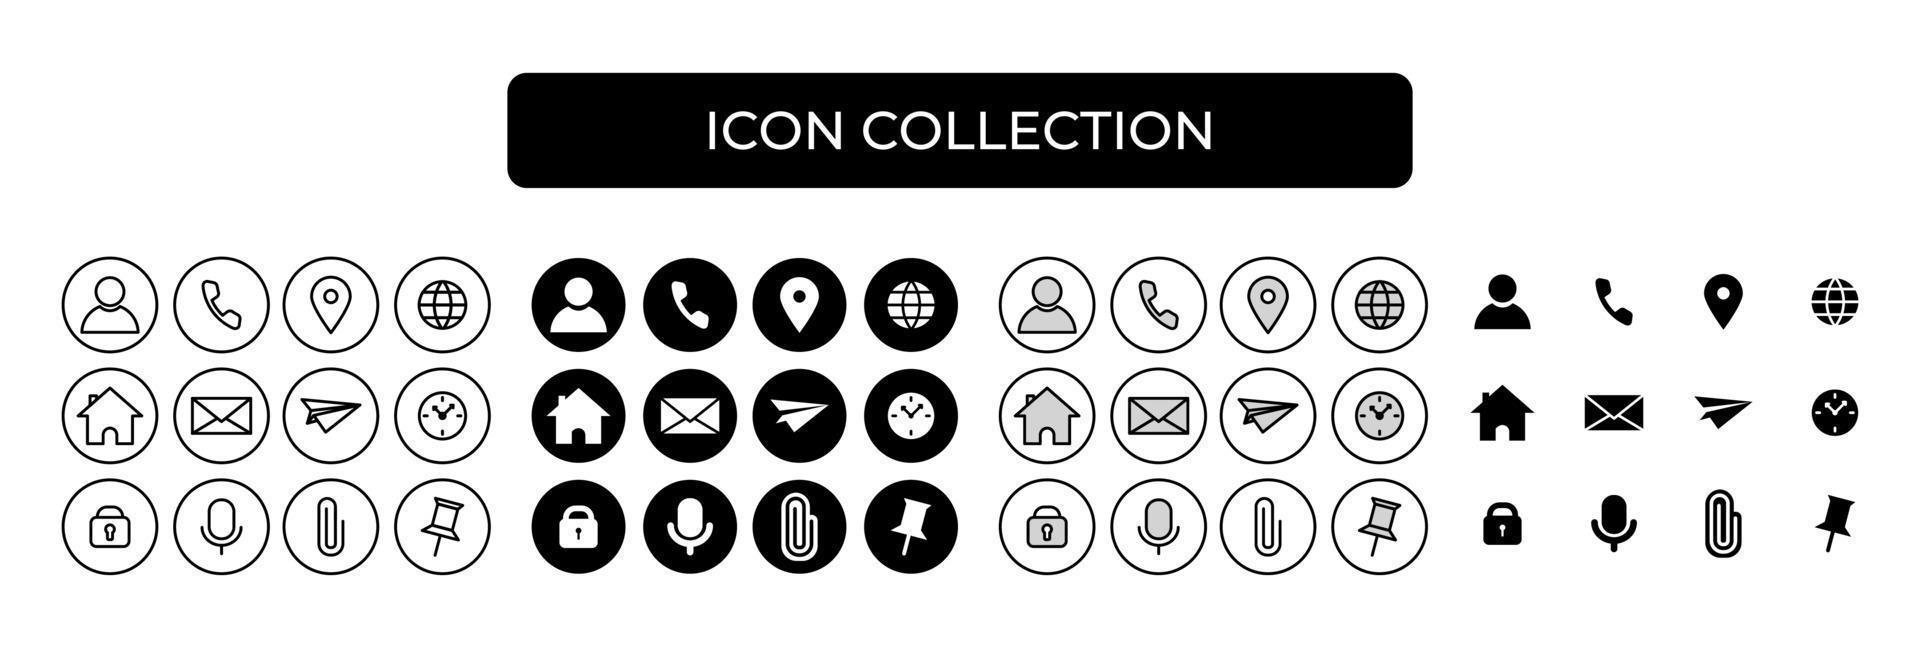 Pin em Icones para celular